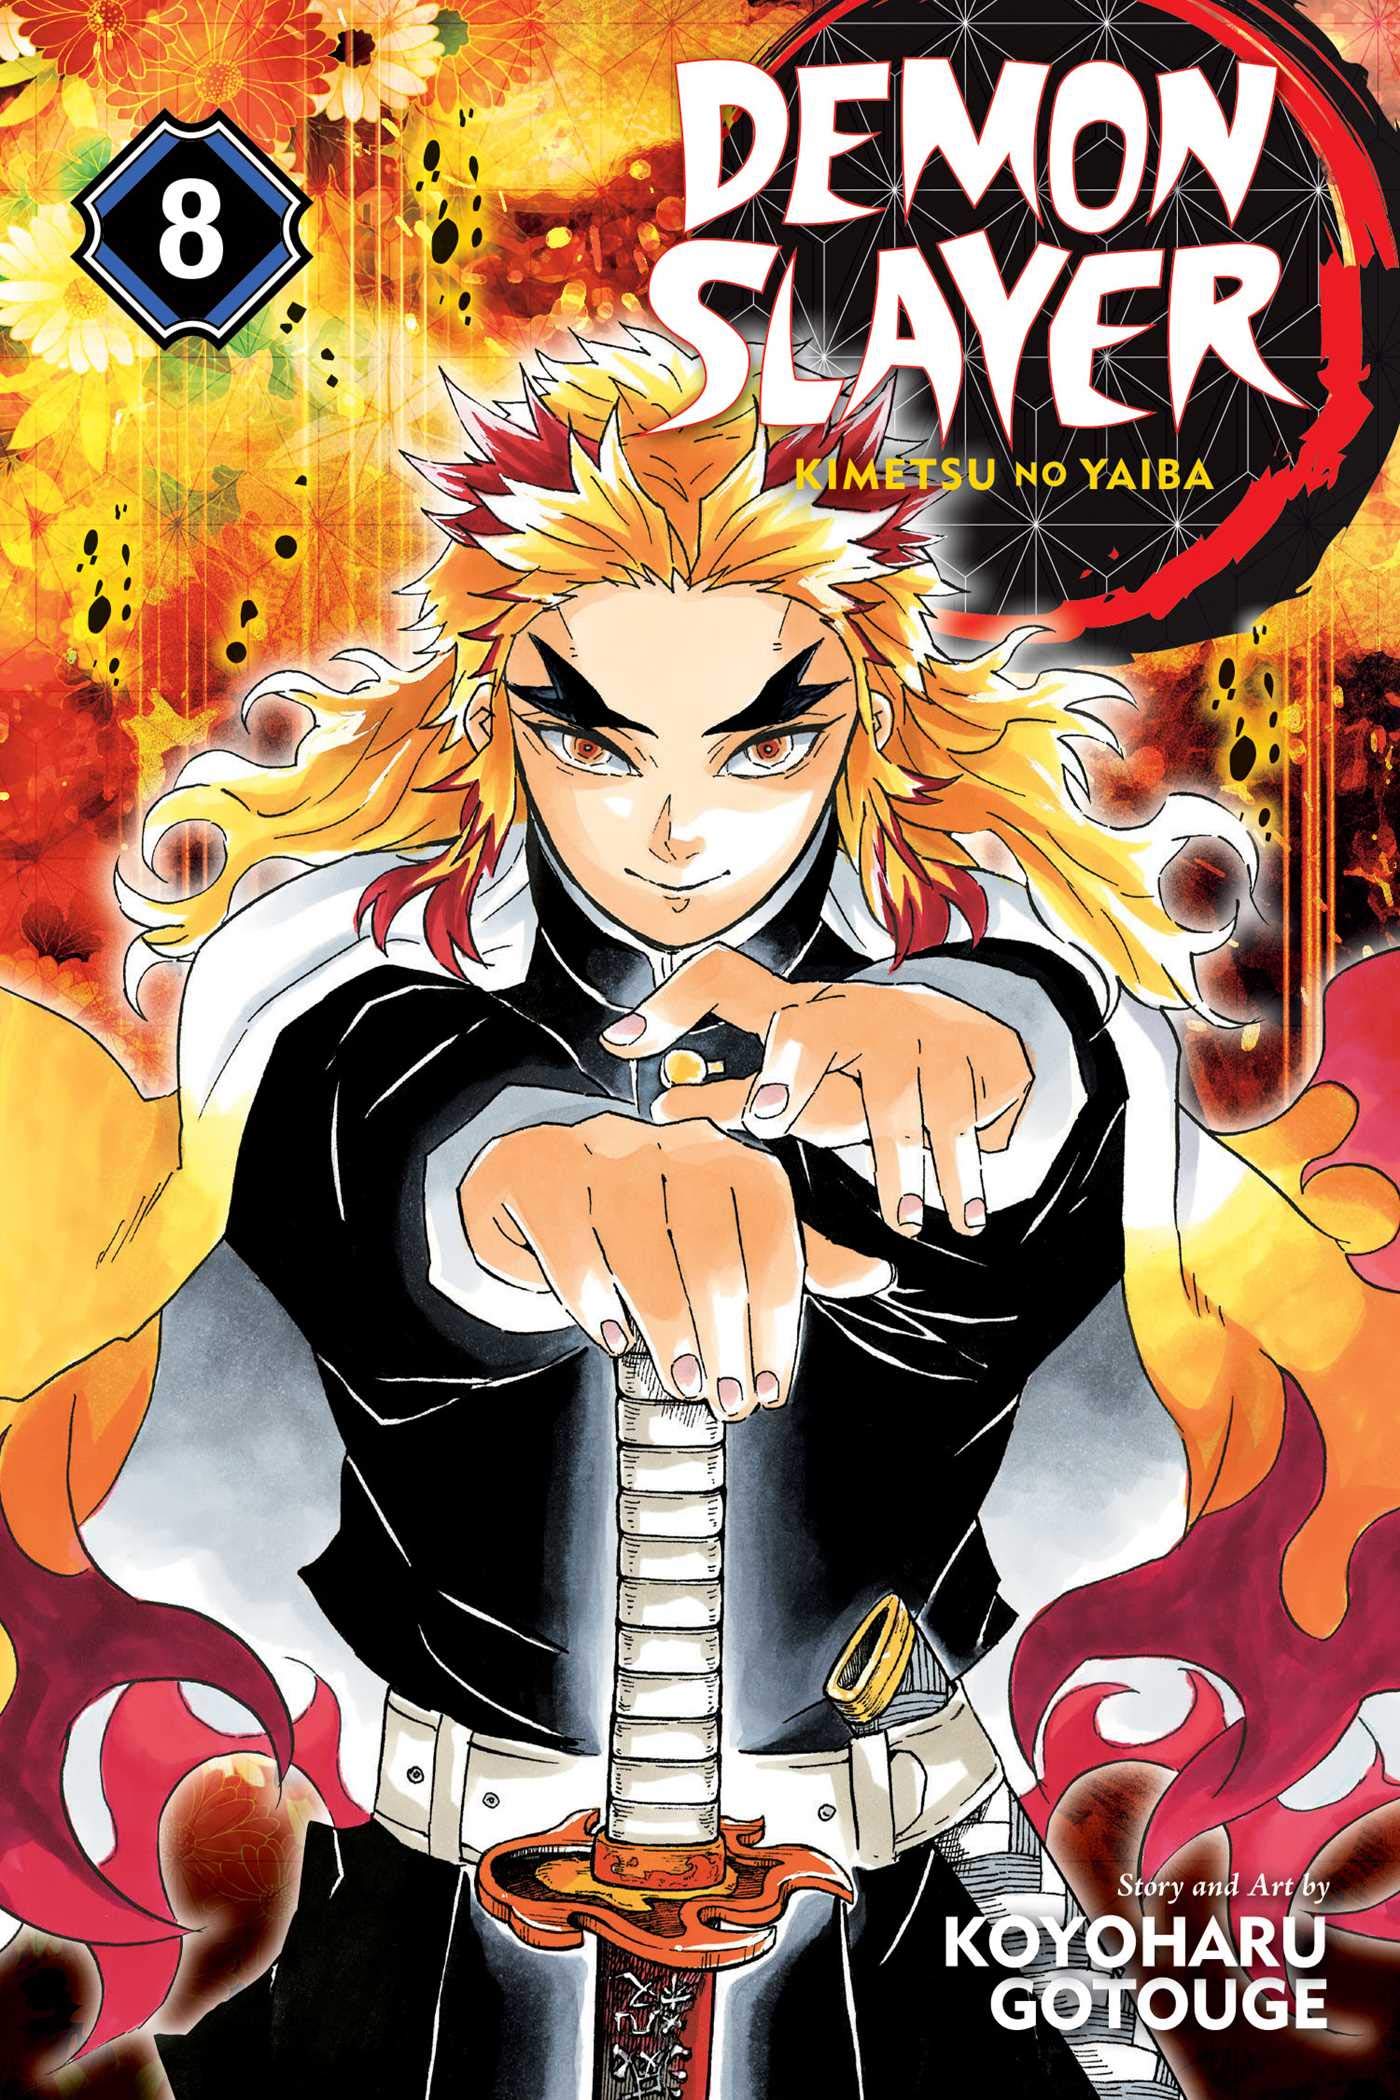 Demon Slayer: Kimetsu no Yaiba - Volume 8 | Koyoharu Gotouge